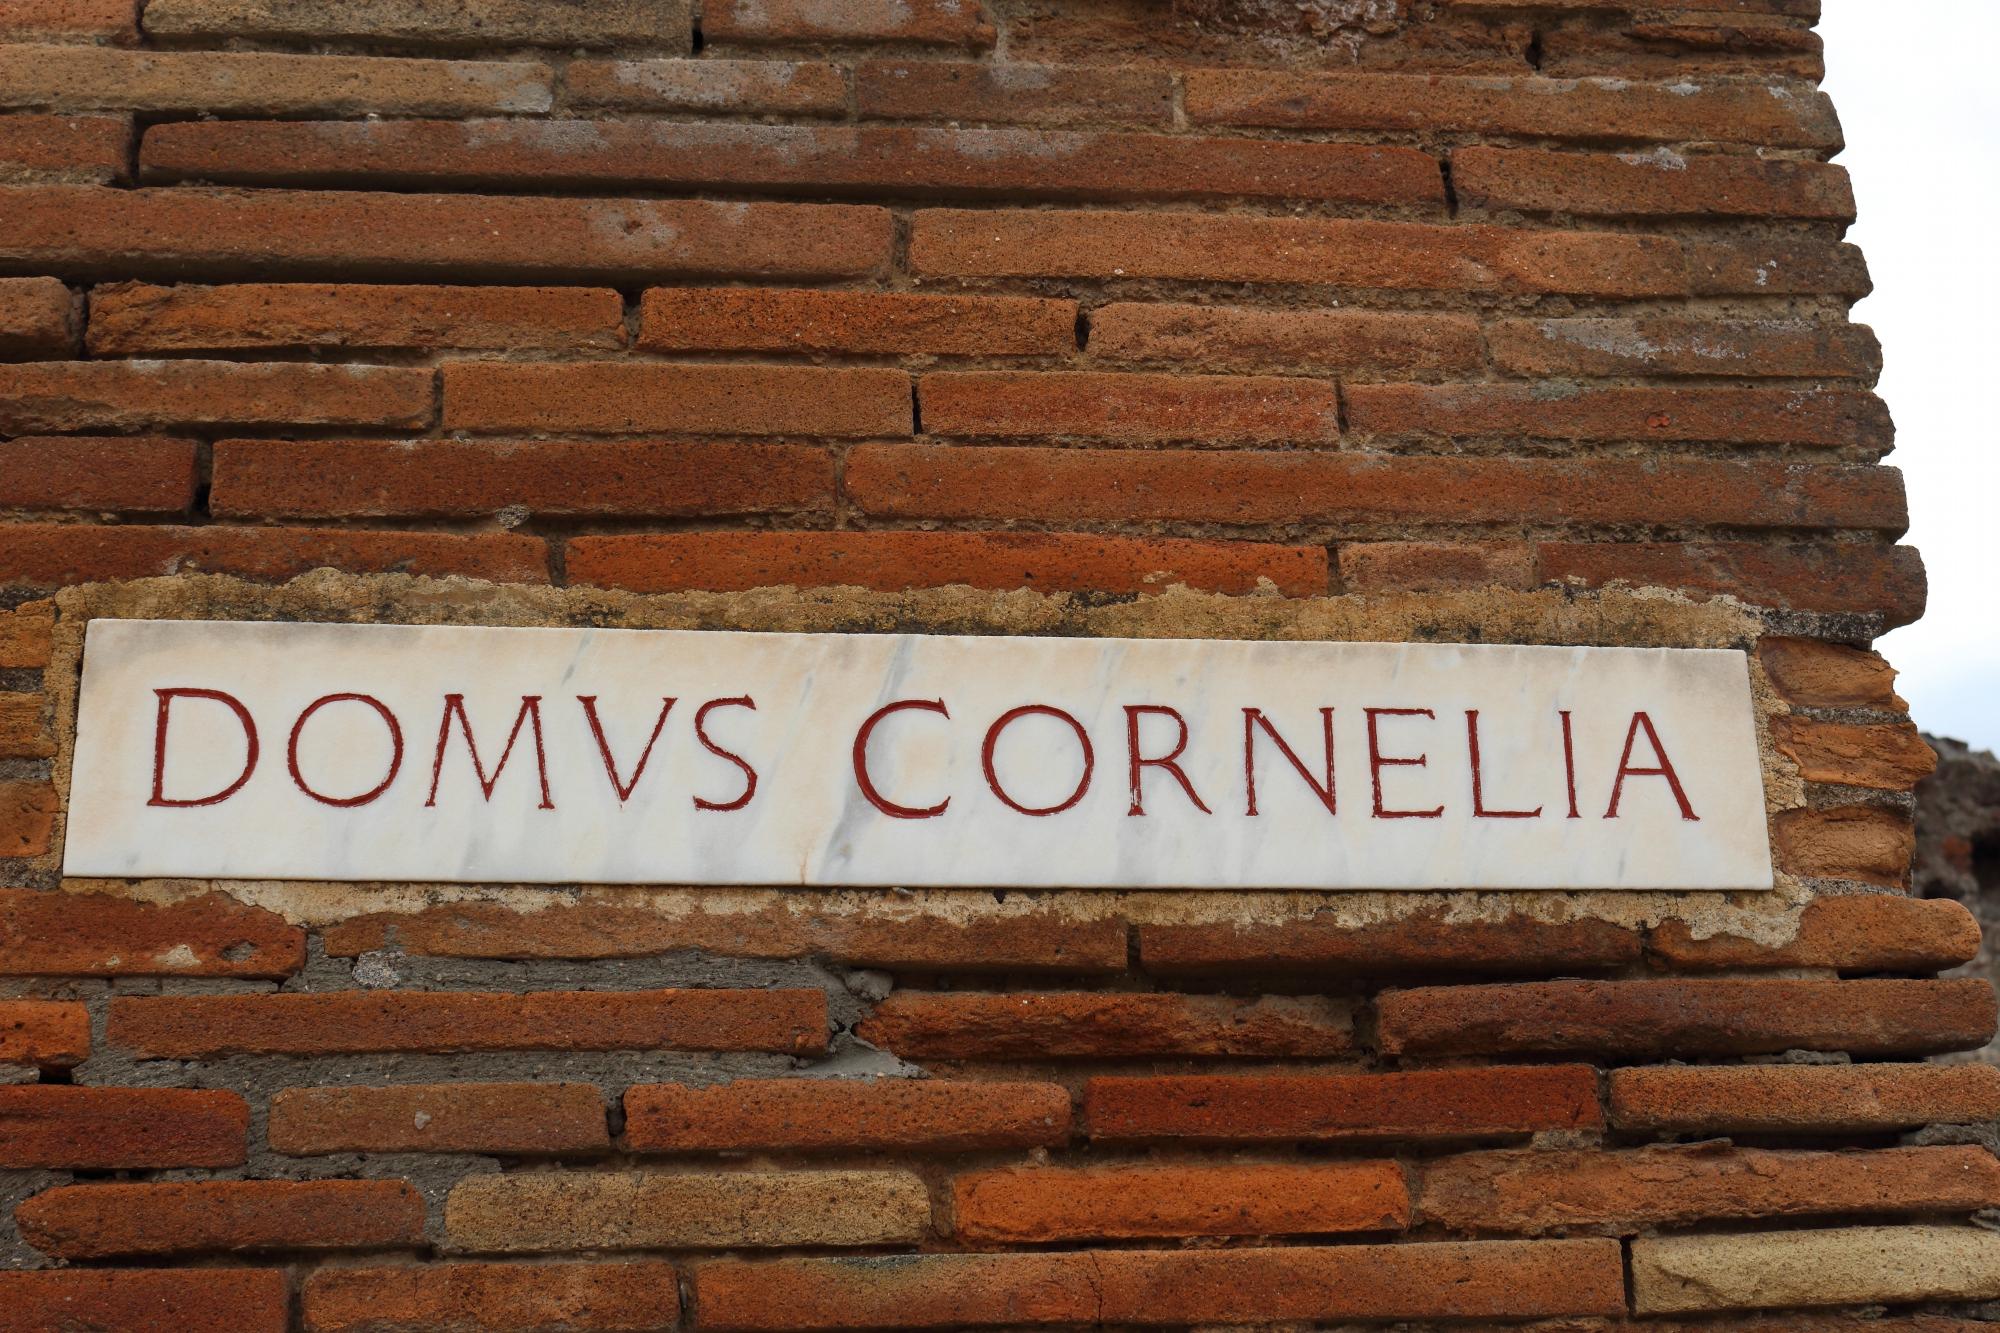 Domus Cornelia